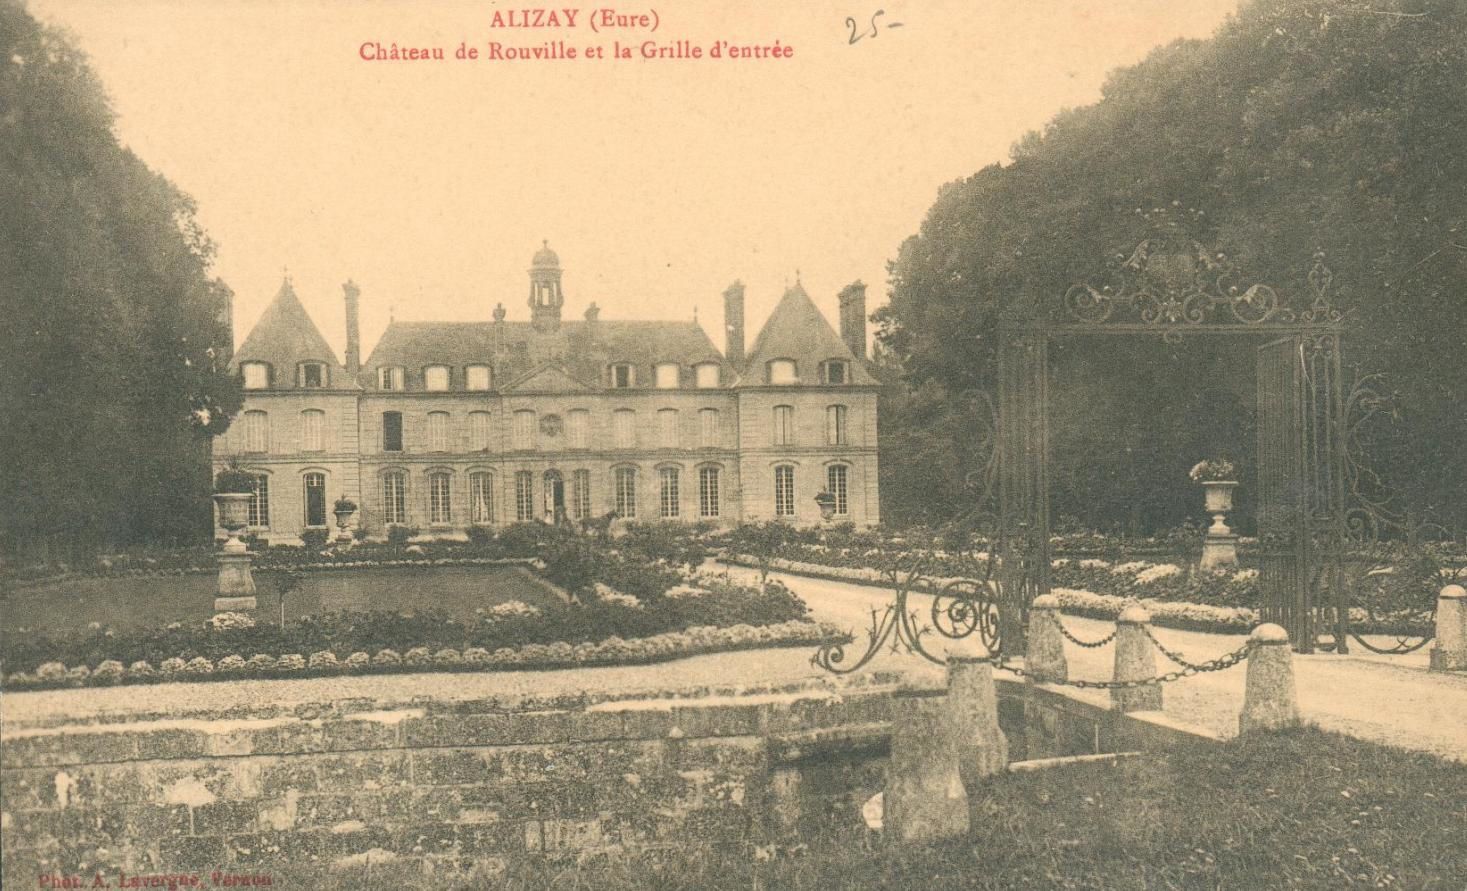 Le château de Rouville (1882) vers 1910, un bel édifice à l'architecture classique, son parc à la française et son portail en fer forgé.